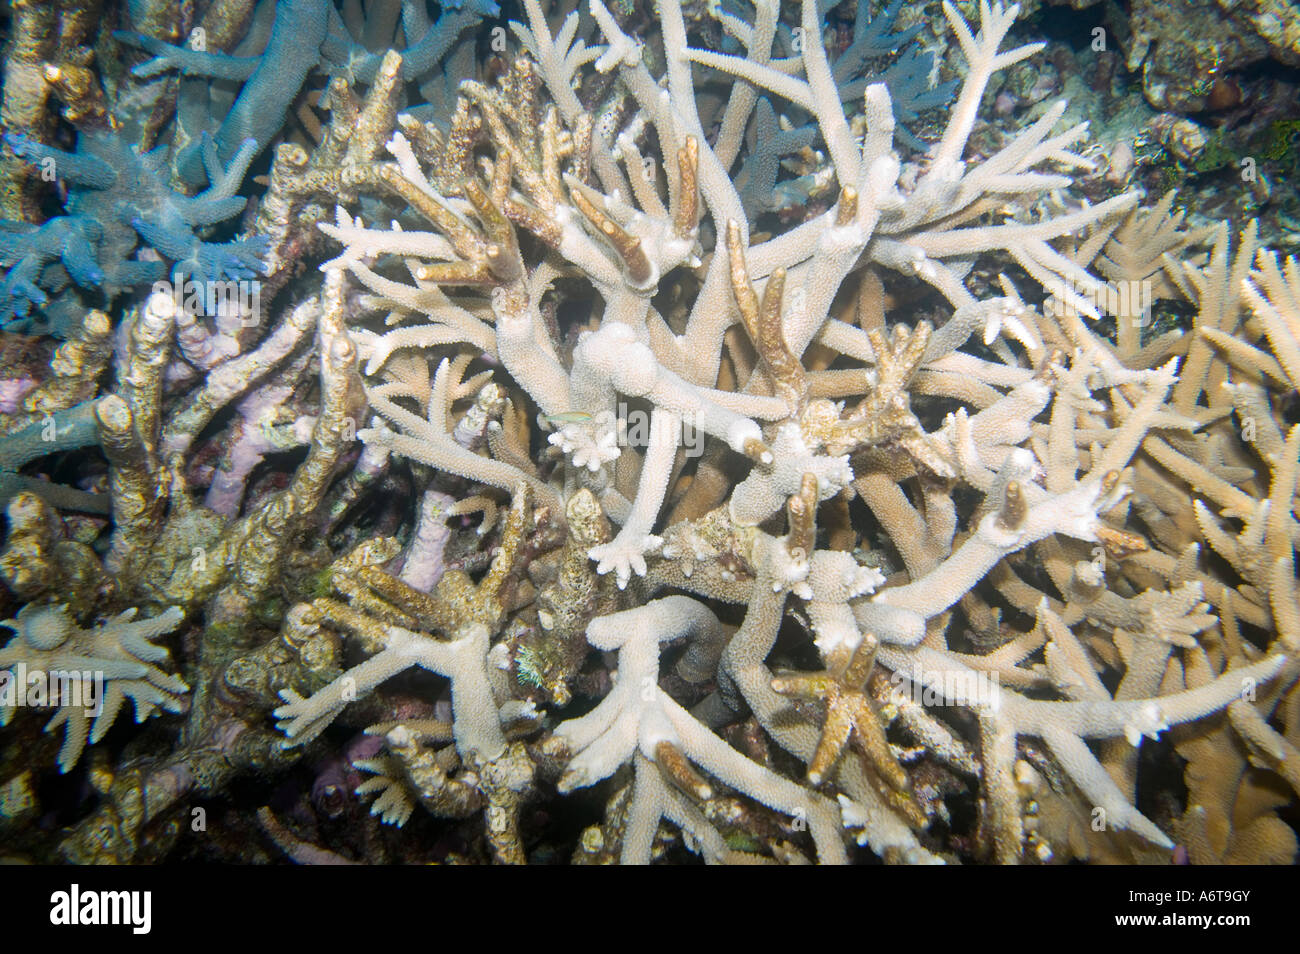 Arrecifes de coral frente a Funafuti comenzando a mostrar signos de decoloración de los corales debido al calentamiento global inducido aumenta la temperatura del mar Foto de stock